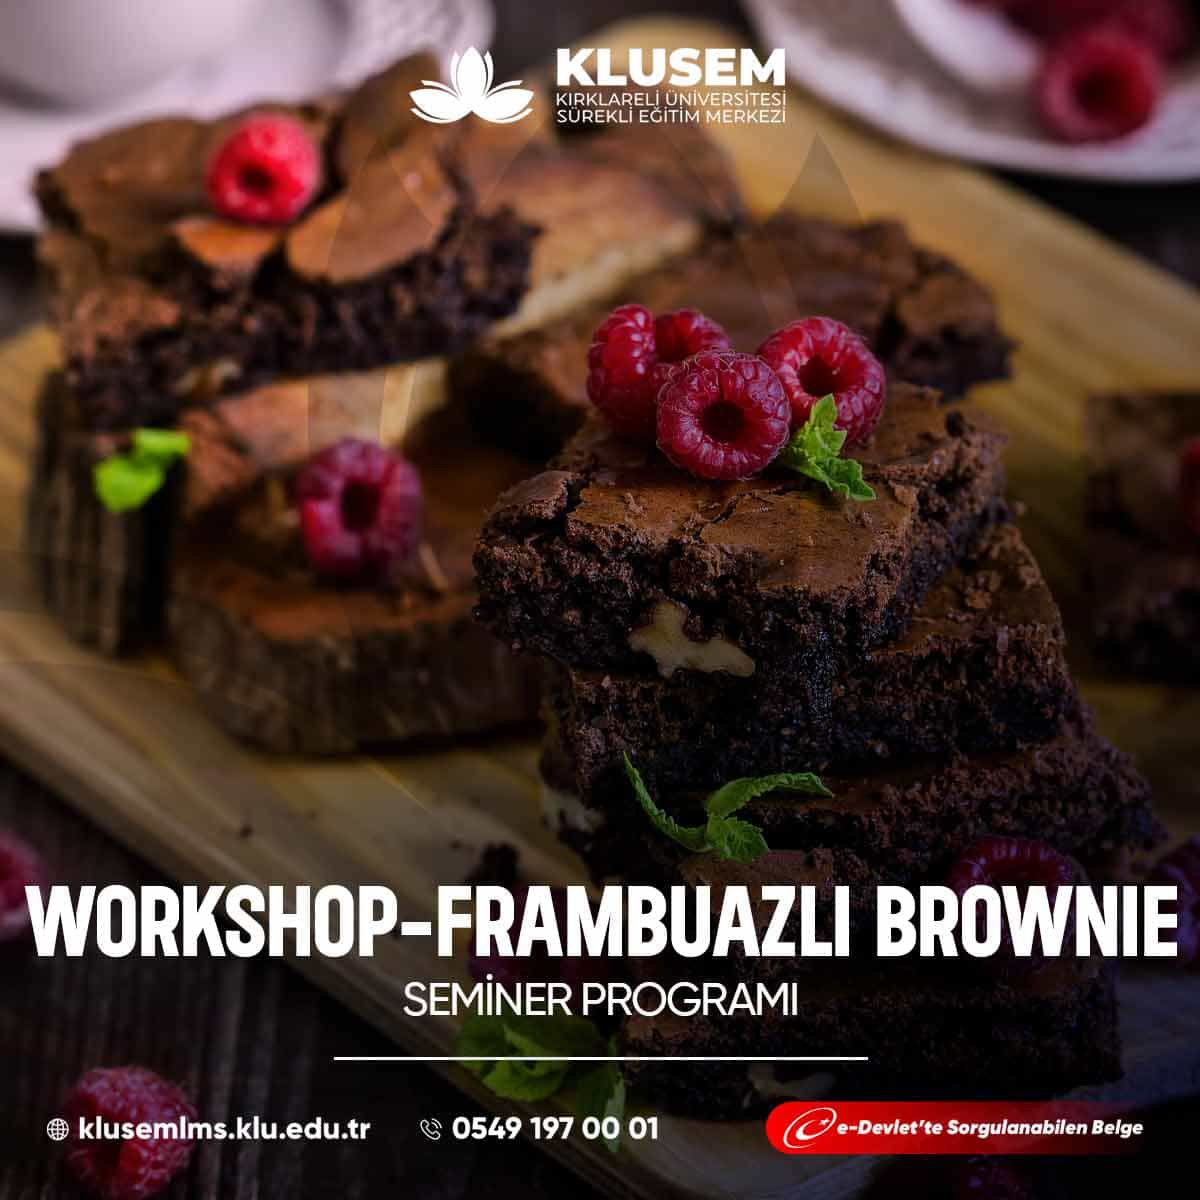 "Frambuazlı Brownie Workshop," katılımcılara muhteşem bir tatlı olan frambuazlı brownie yapmayı öğrenme fırsatı sunar.